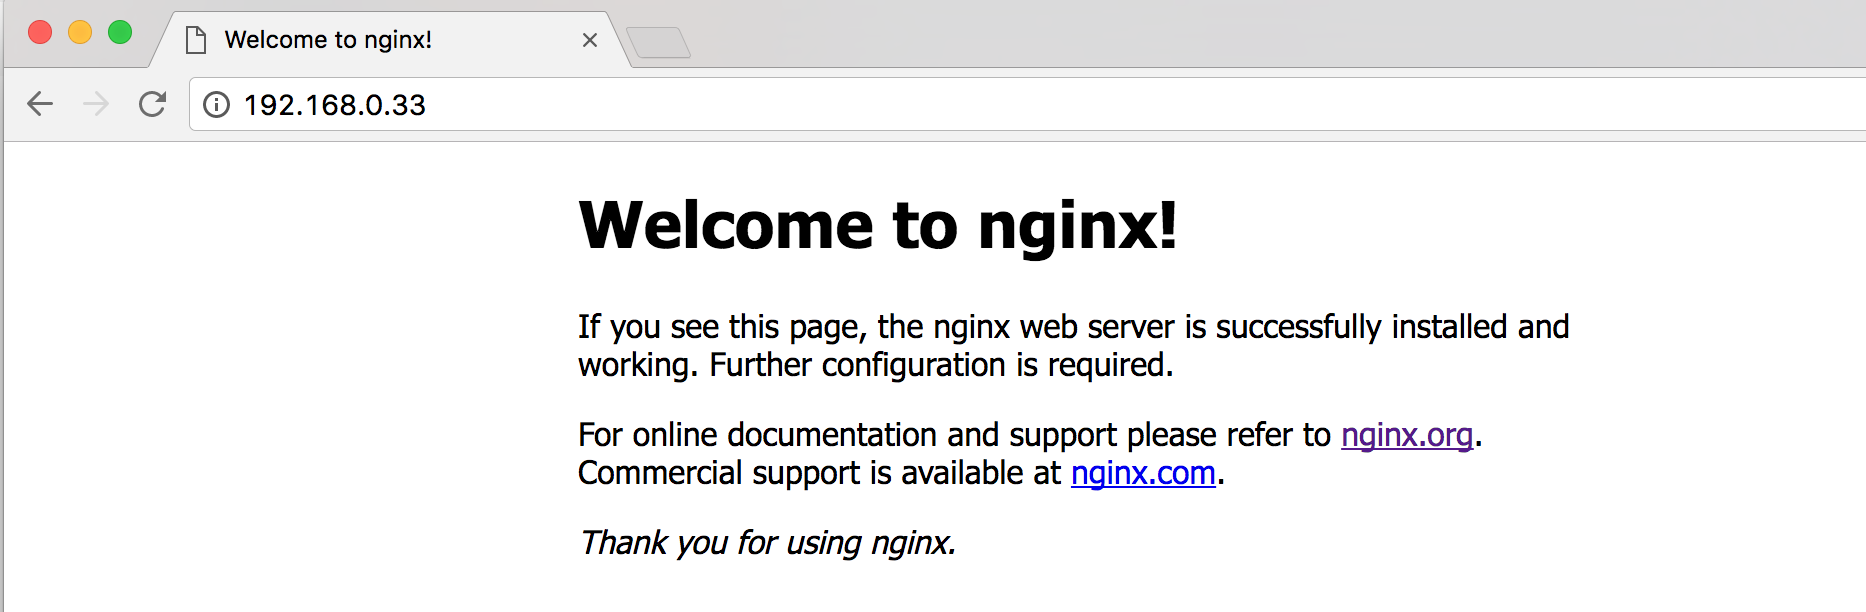 Nginx index html. Localhost Welcome to nginx. Nginx web Server successfully installed Ubuntu.